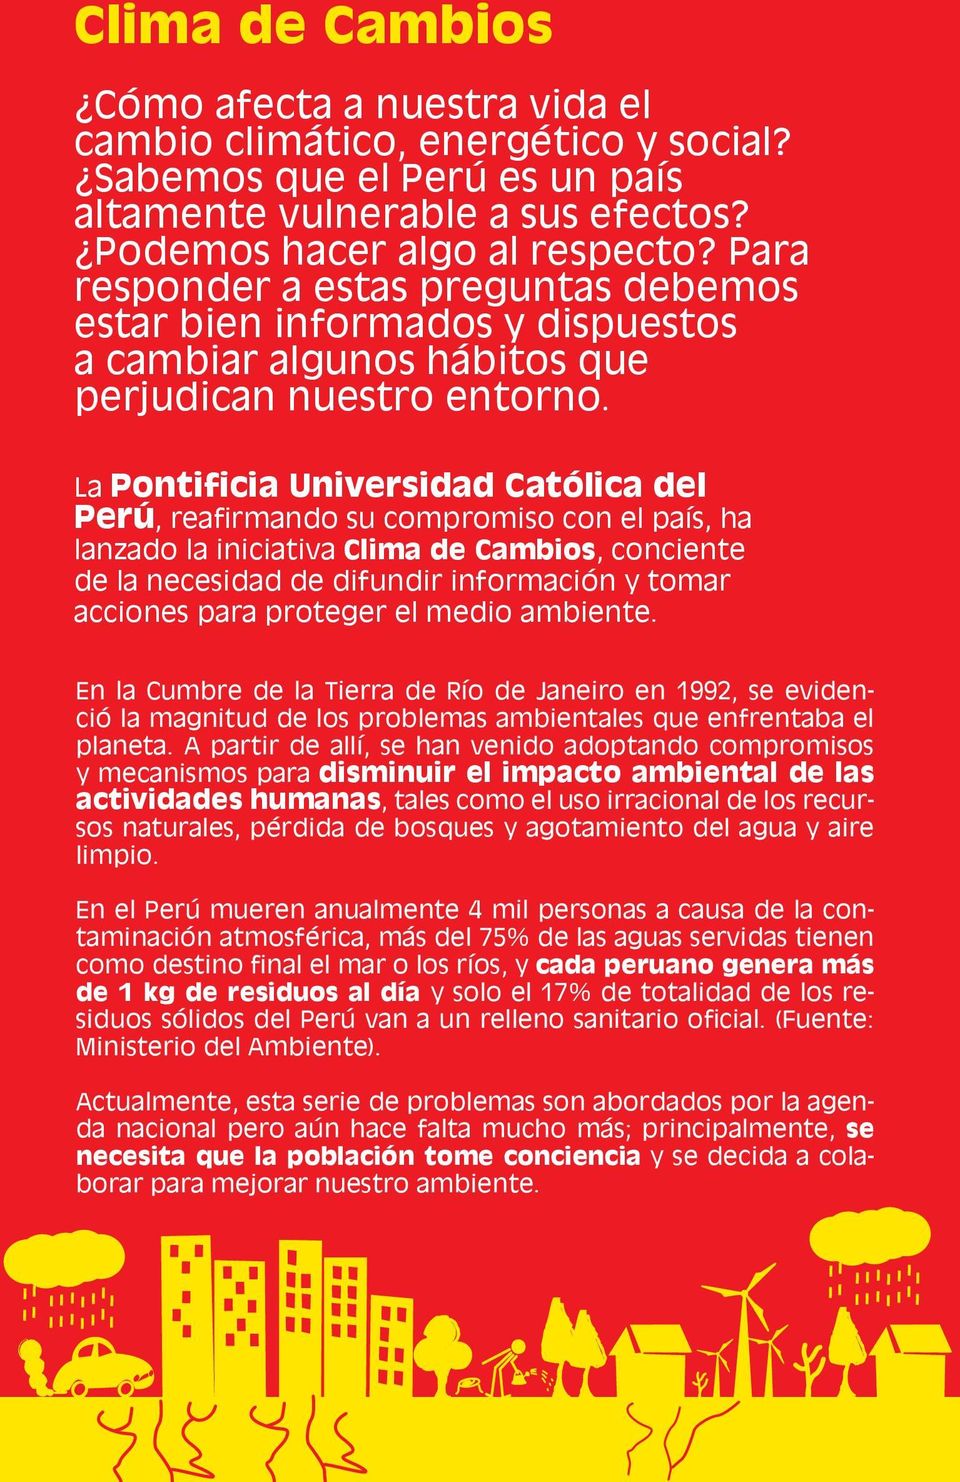 La Pontificia Universidad Católica del Perú, reafirmando su compromiso con el país, ha lanzado la iniciativa Clima de Cambios, conciente de la necesidad de difundir información y tomar acciones para